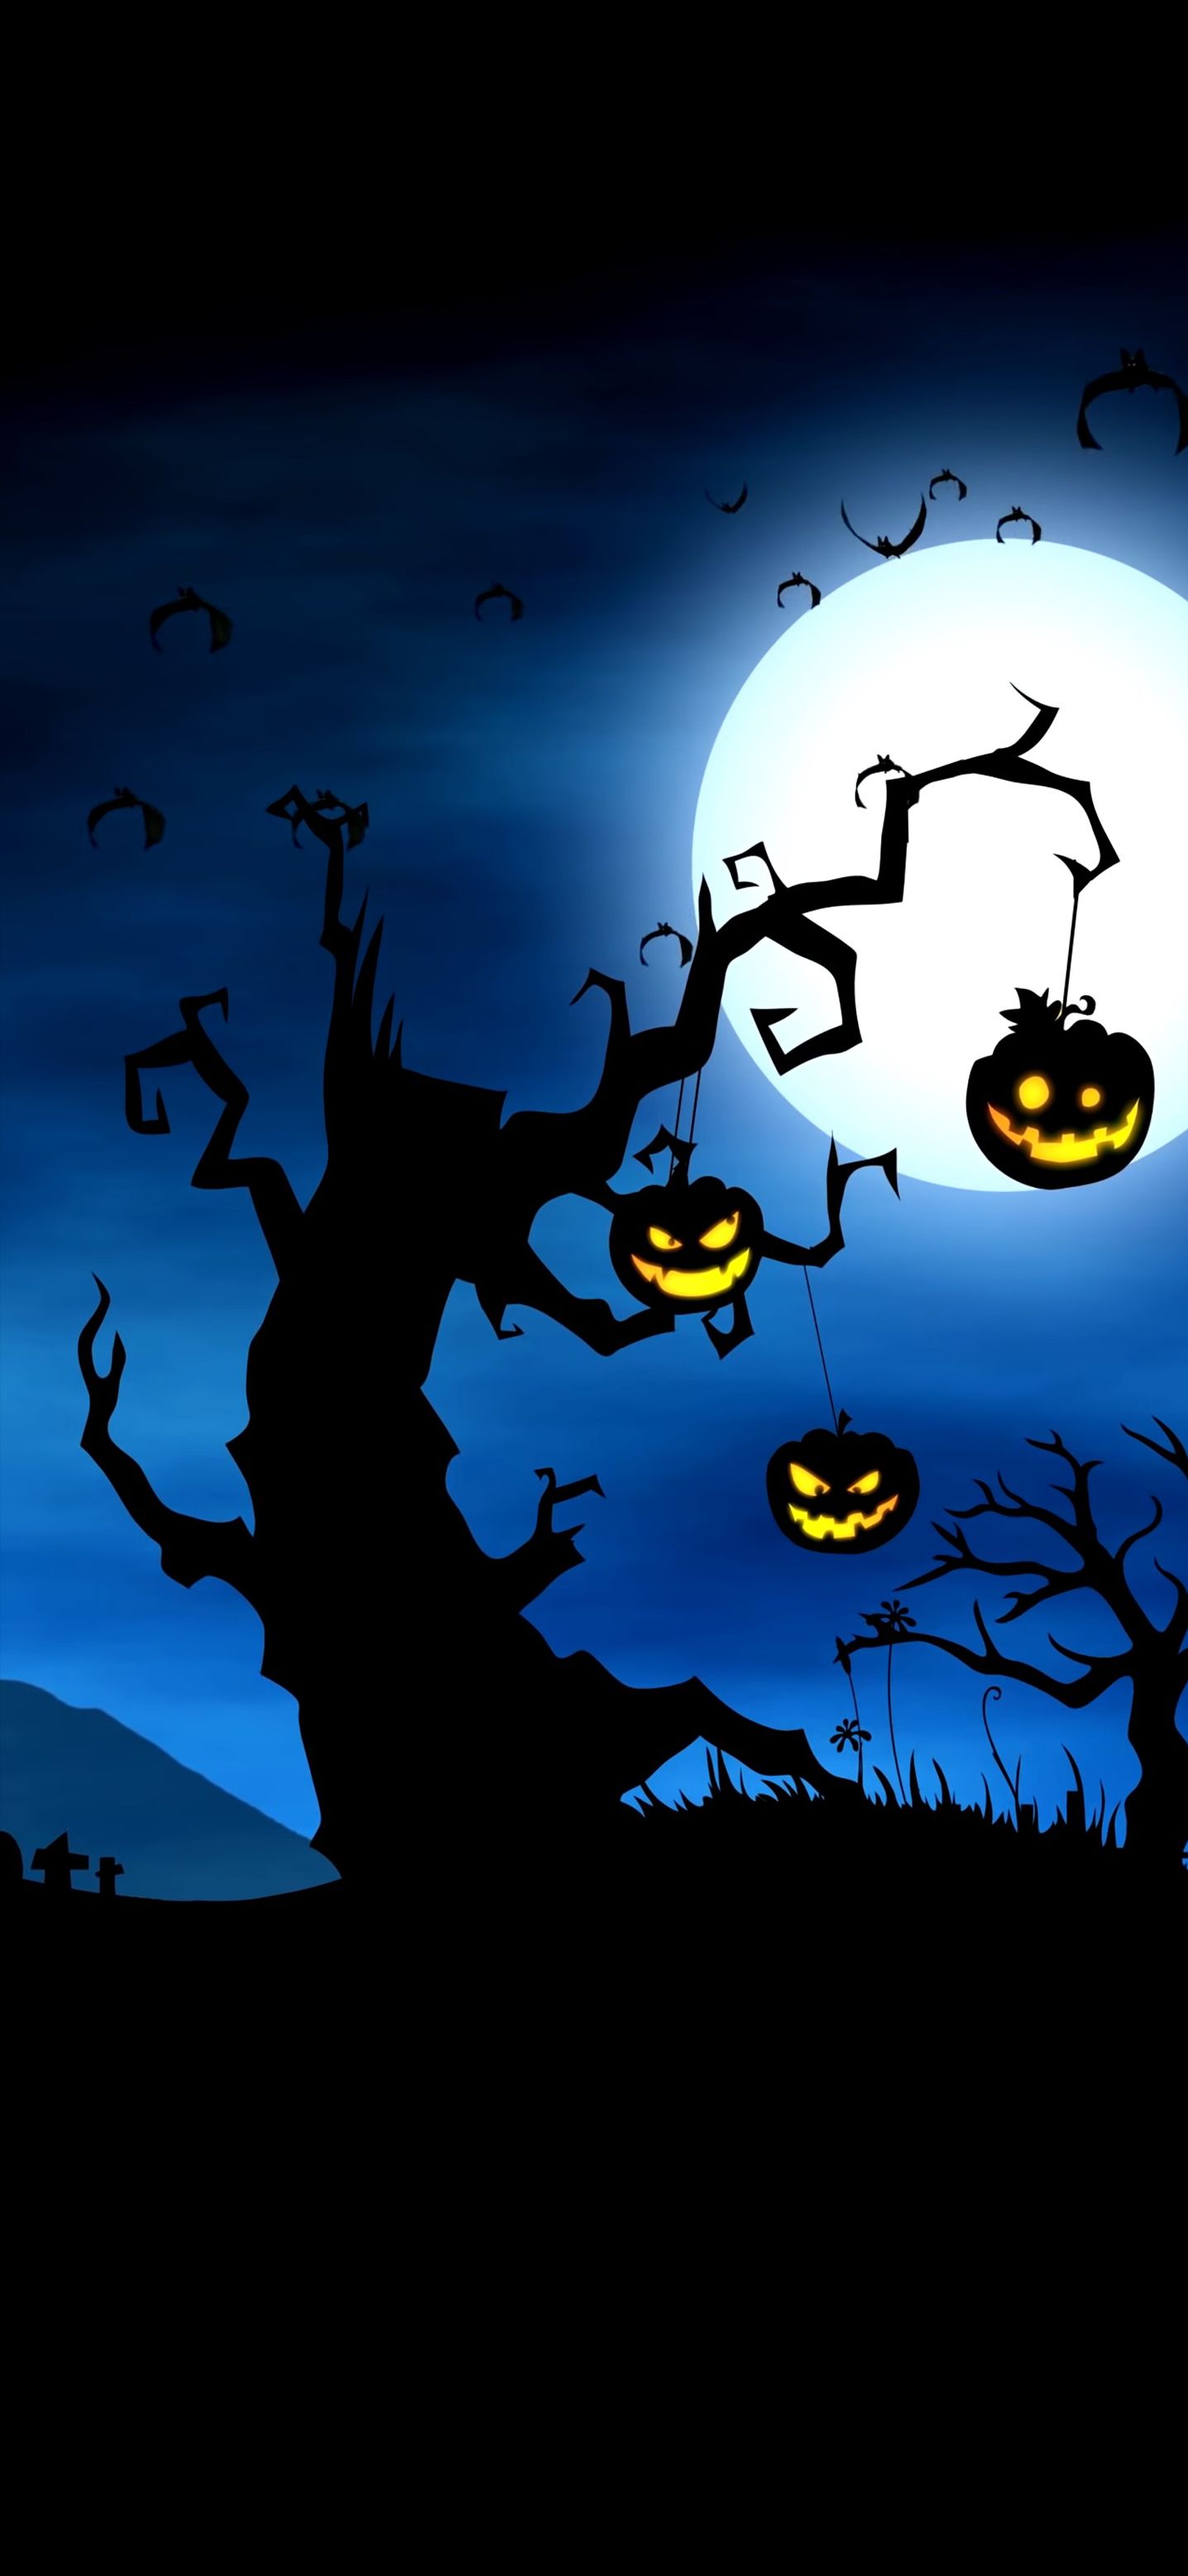 Halloween Wallpaper for iPhone. Halloween wallpaper iphone, Halloween wallpaper, Spooky halloween picture